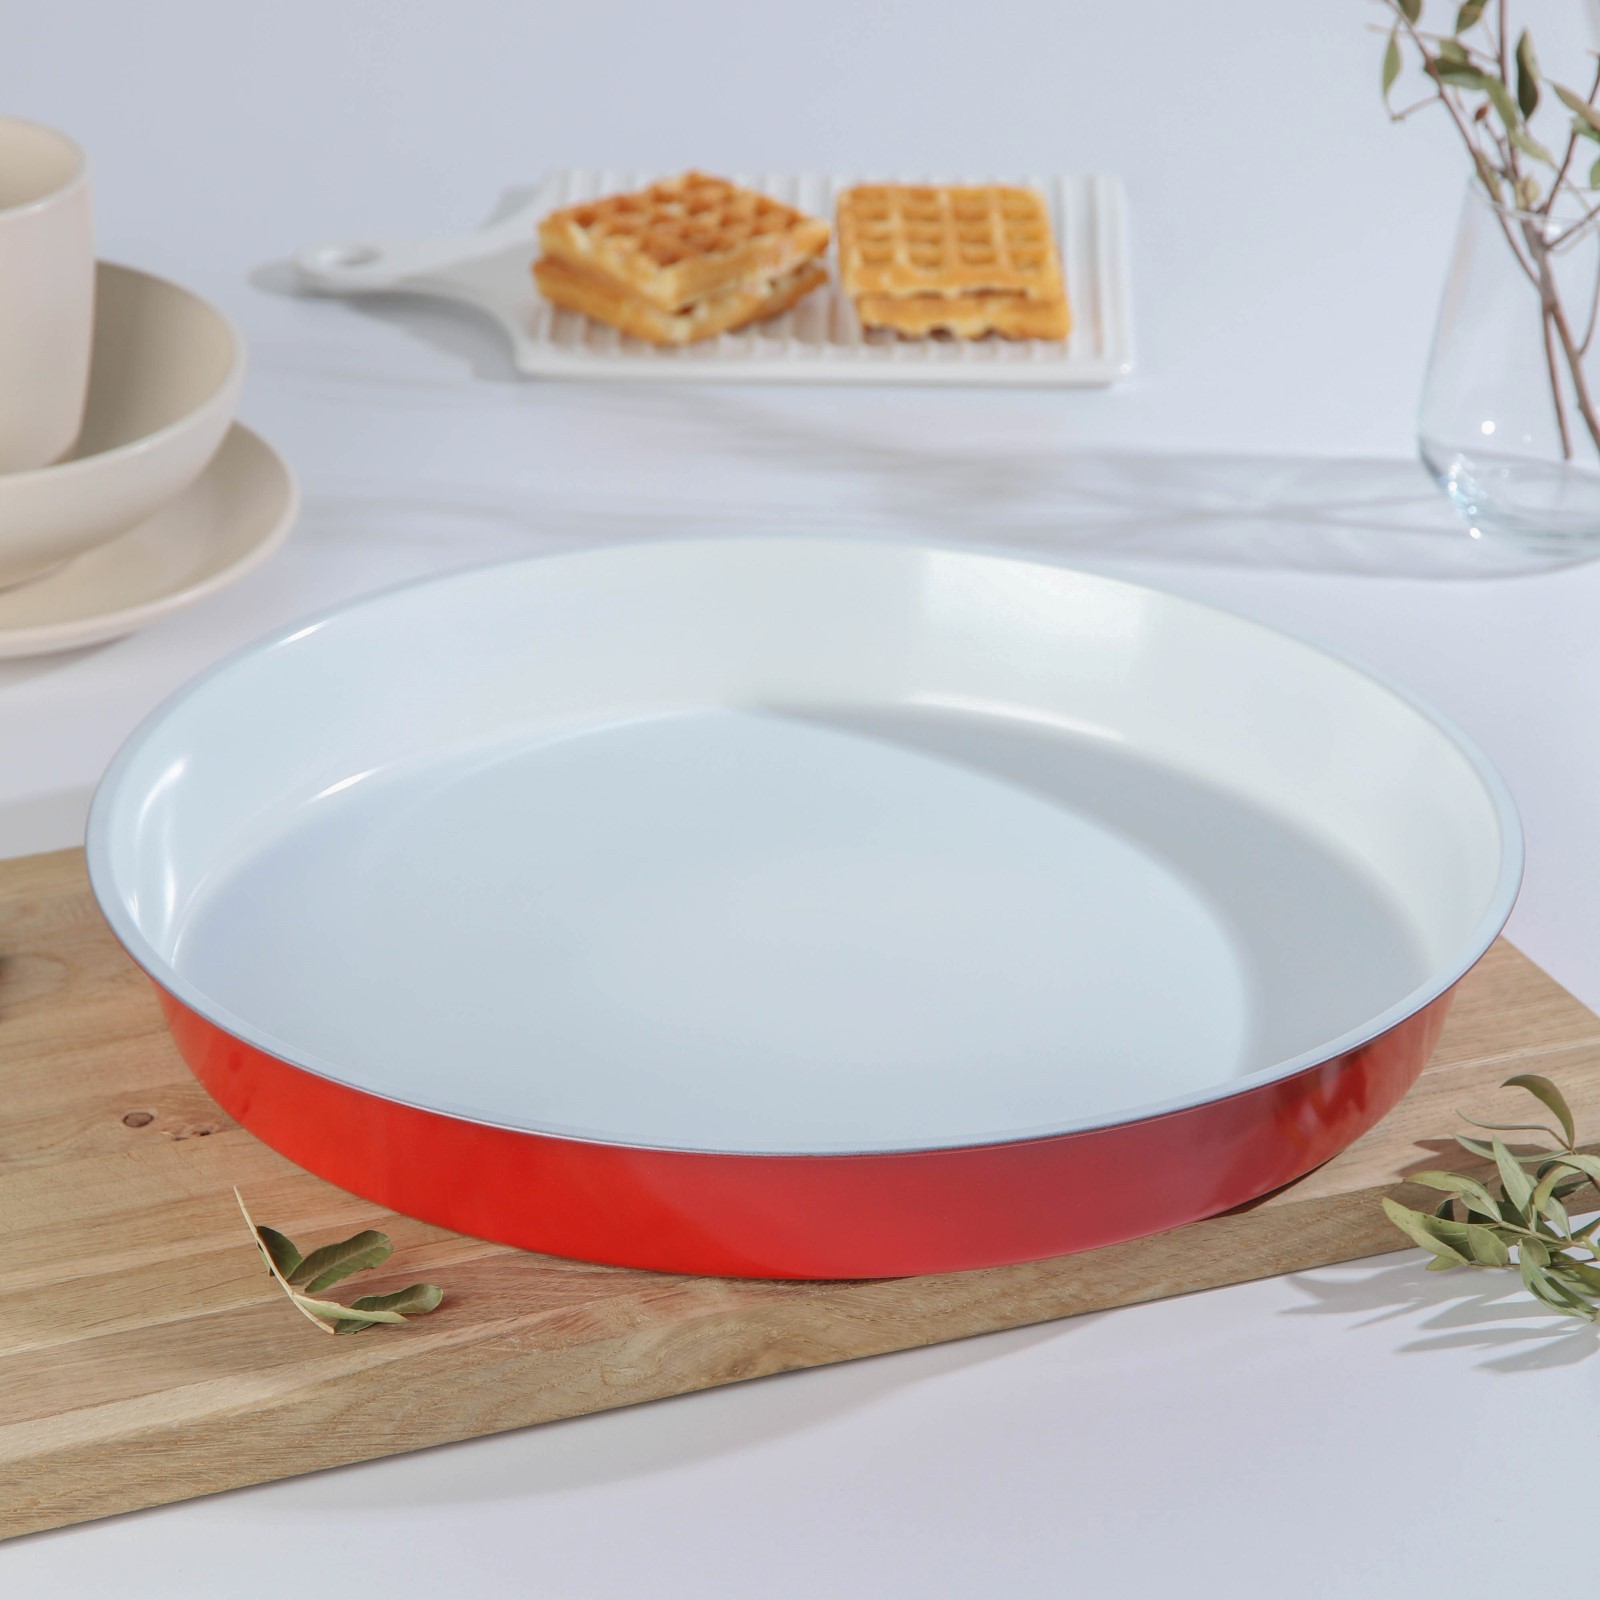 В кругу 36 см. Форма с крышкой для запекания в духовке 24 см круглая. Тарелка под выпечку керамическая. 36 См круг. Китайская посуда для выпечки. Красная в ленте.